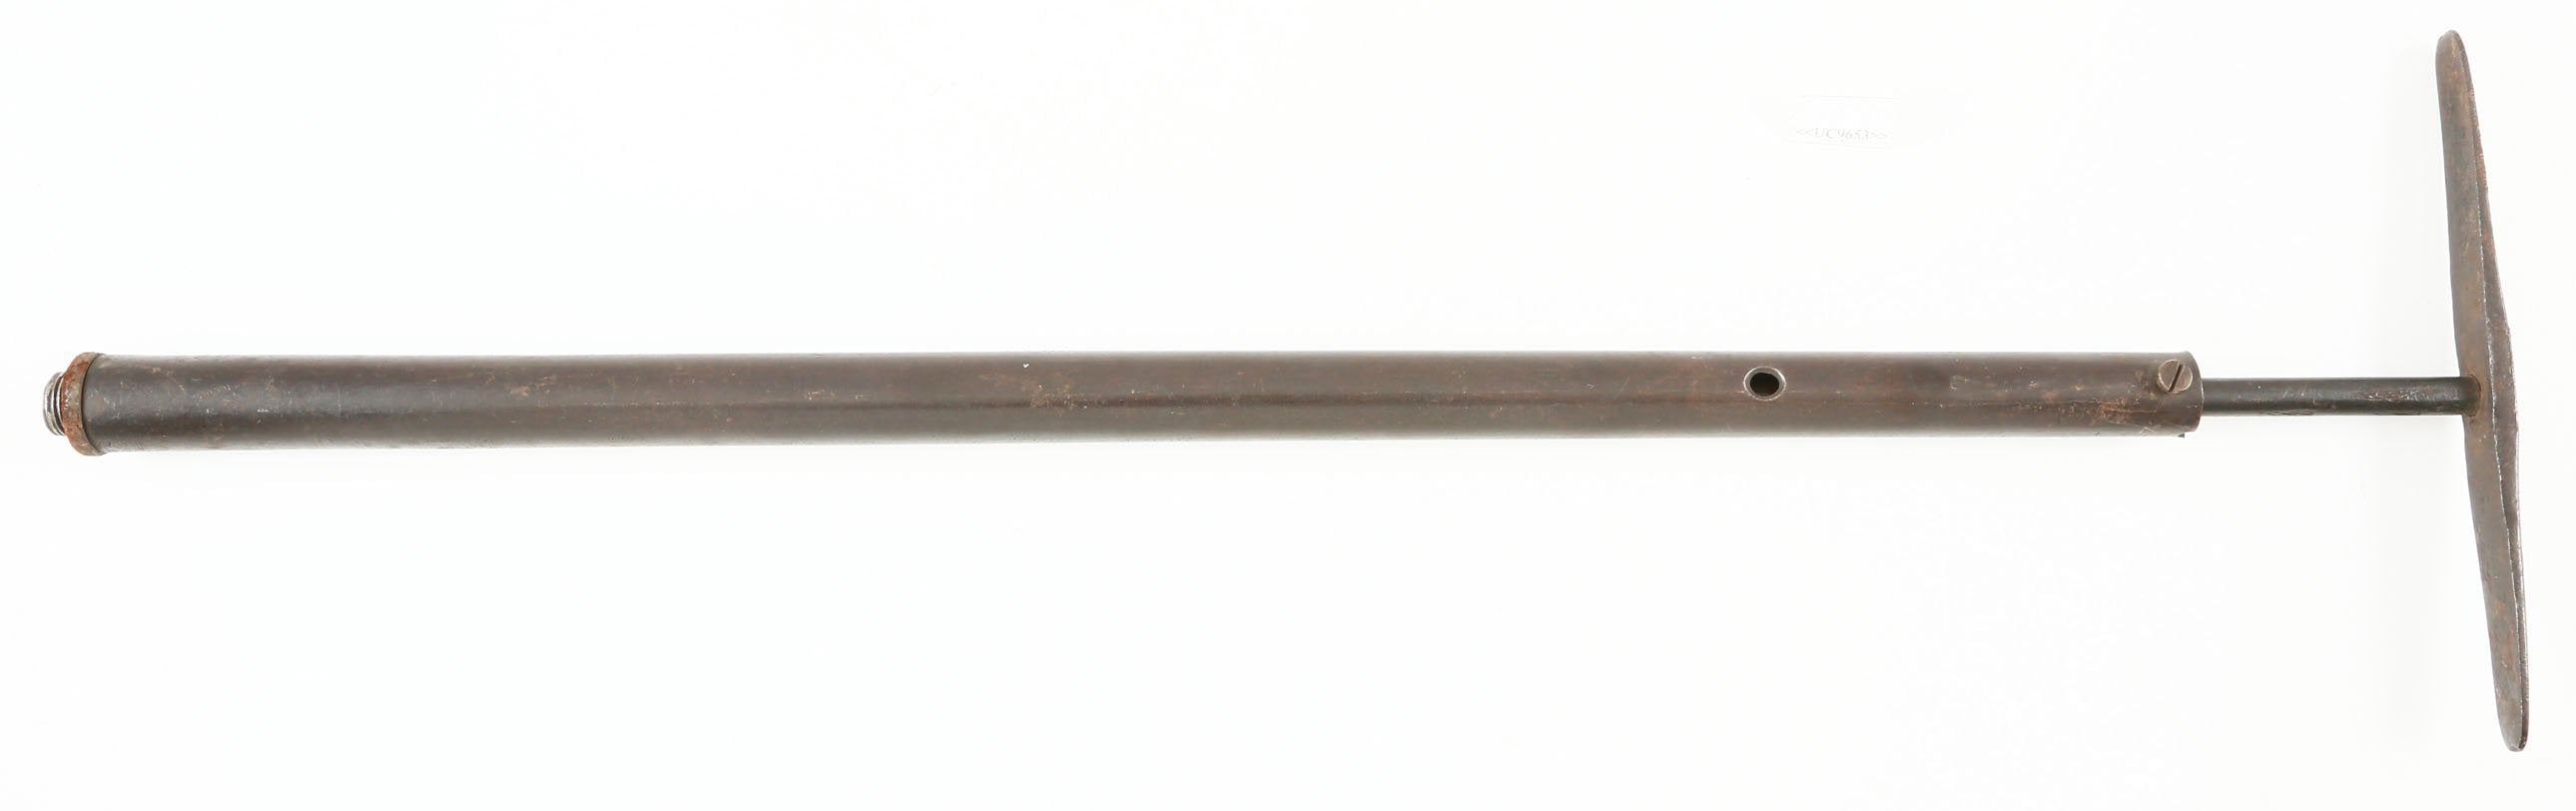 RARE EUROPEAN AIR GUN PUMP C.1880 - Fagan Arms